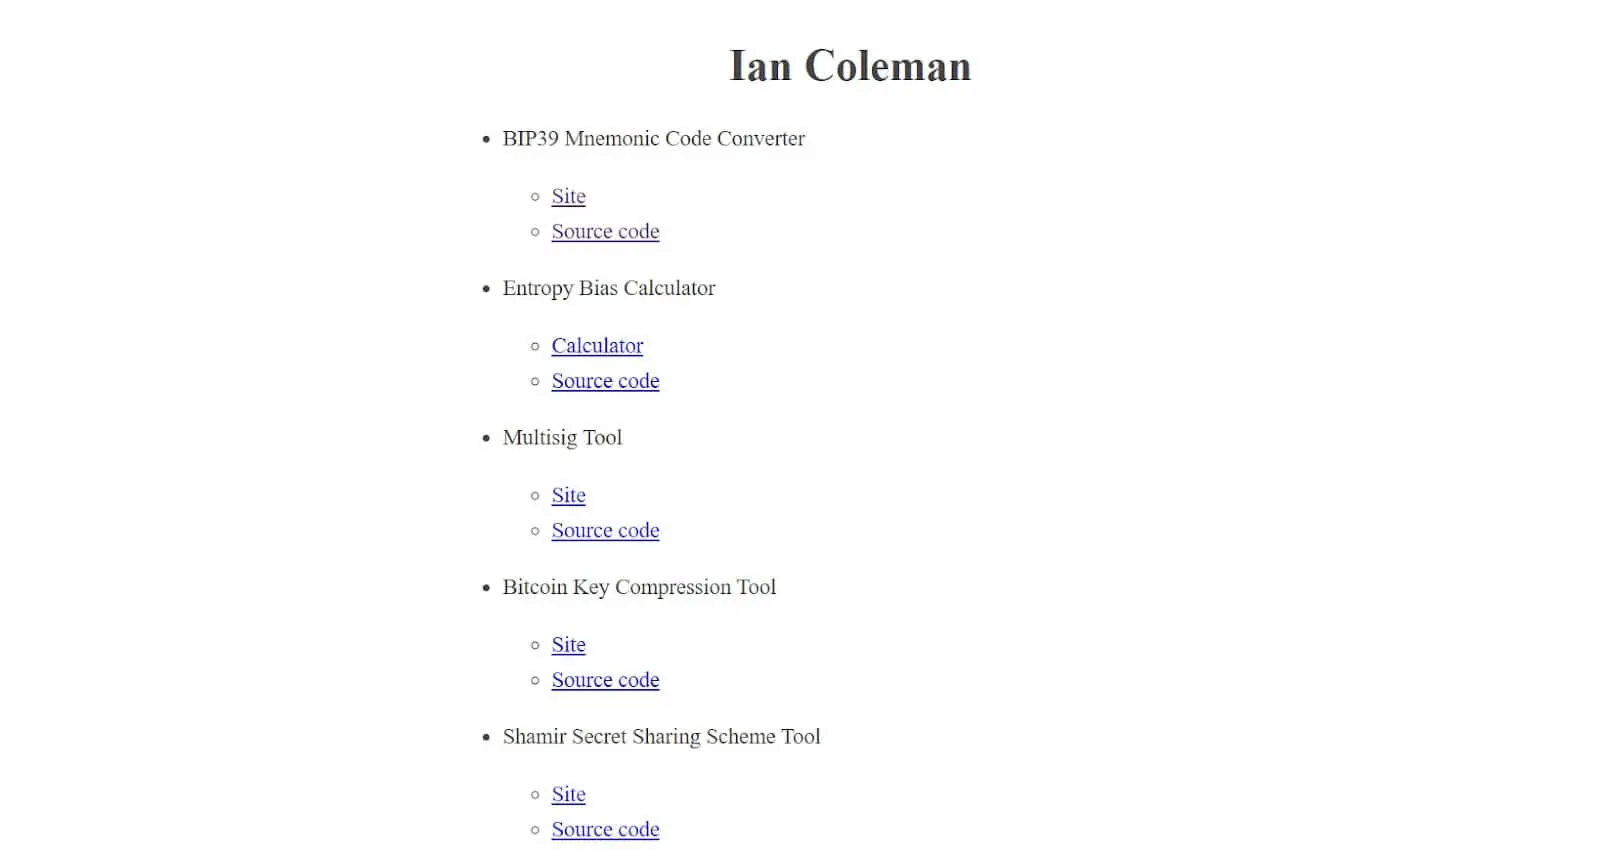 Ian Coleman's website